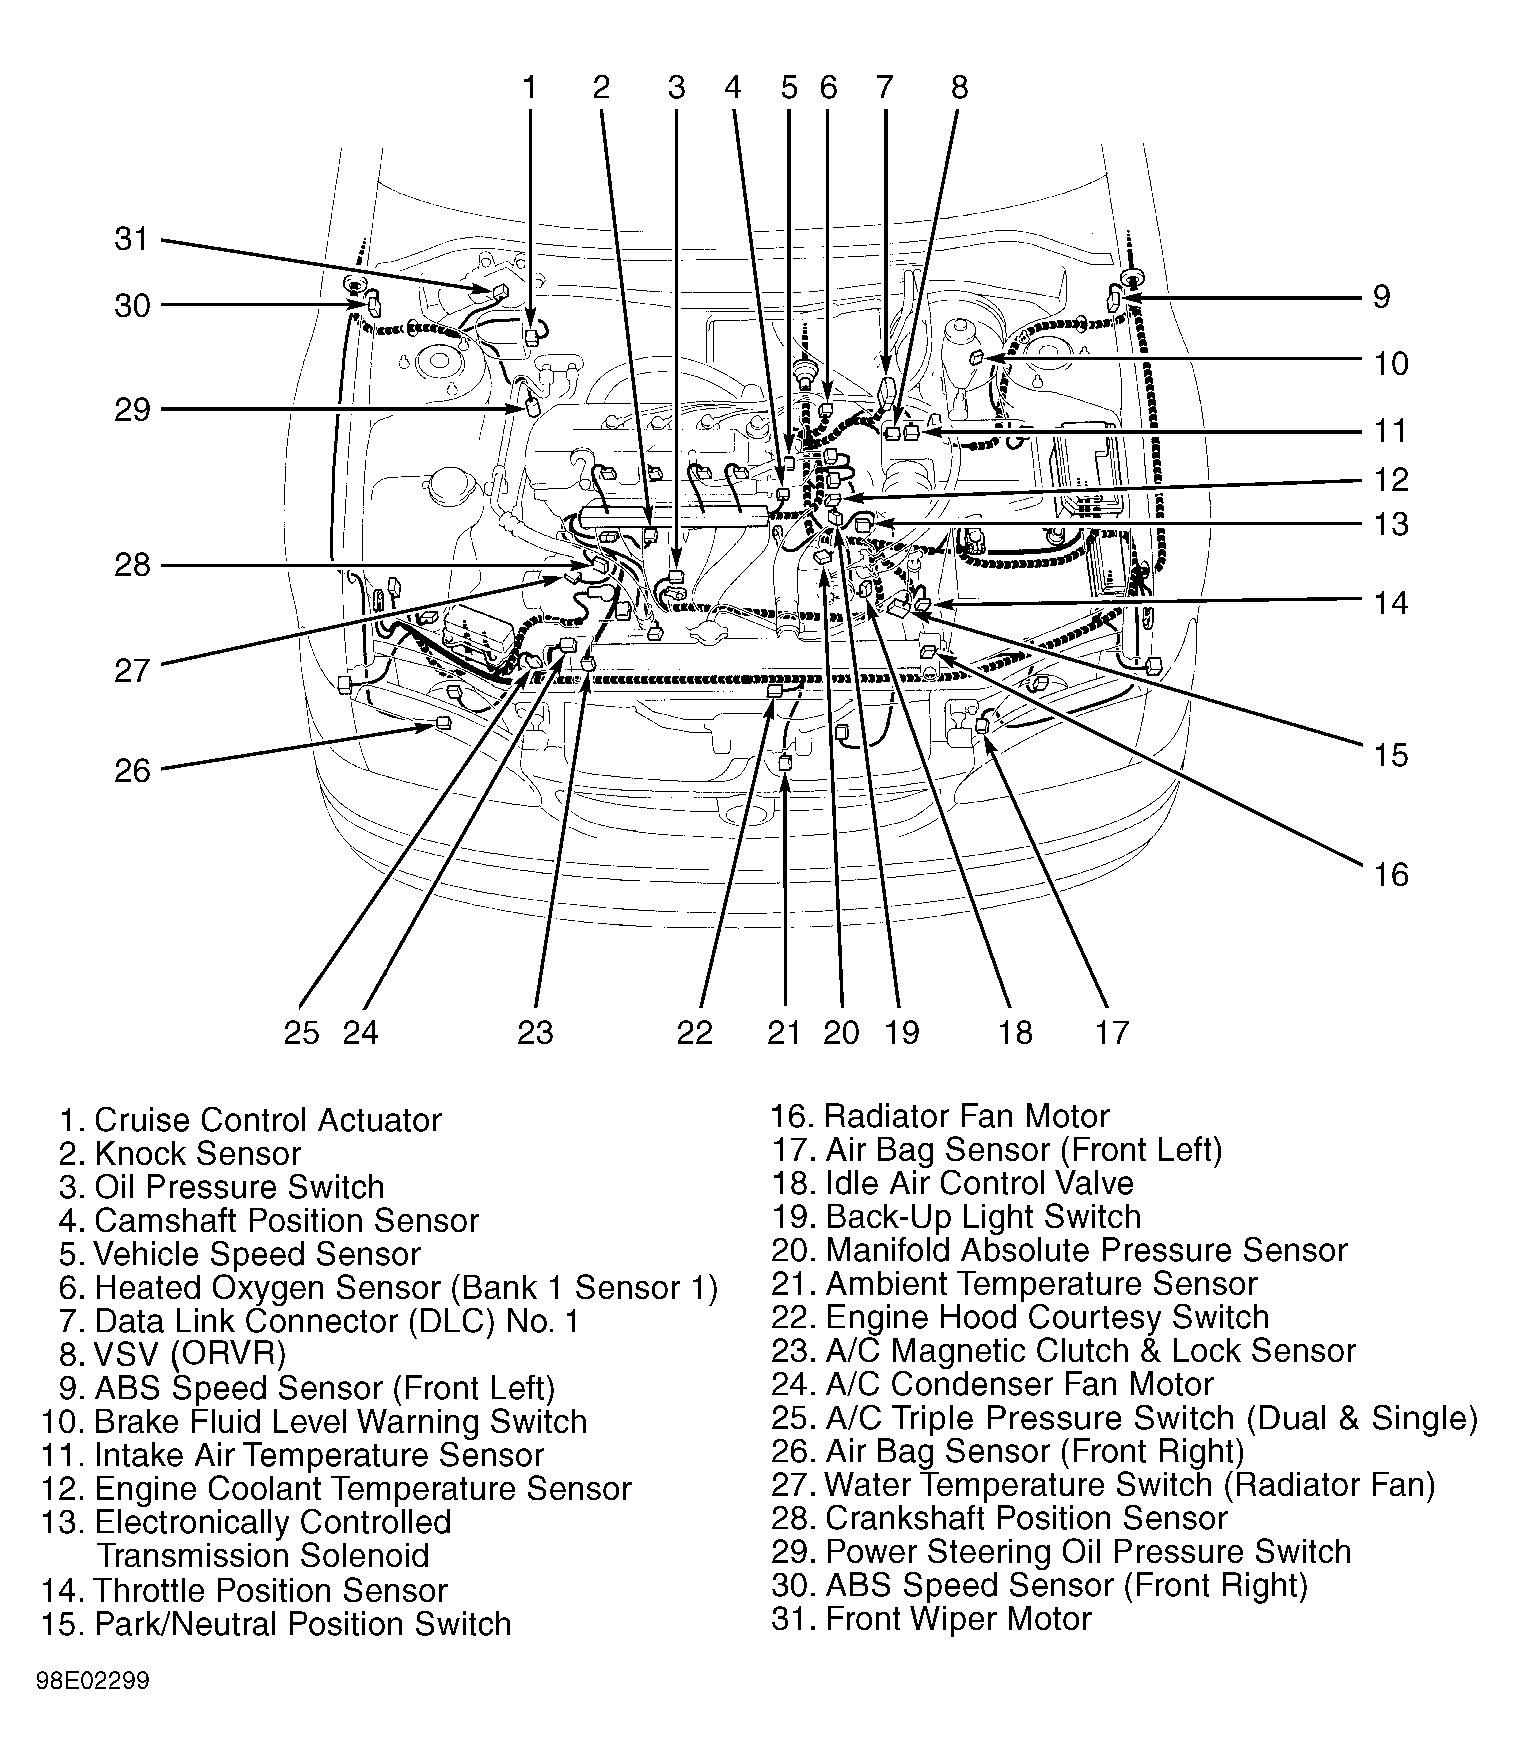 1999 toyota Camry Engine Diagram toyota Supra Engine Diagram toyota Wiring Diagrams Instructions